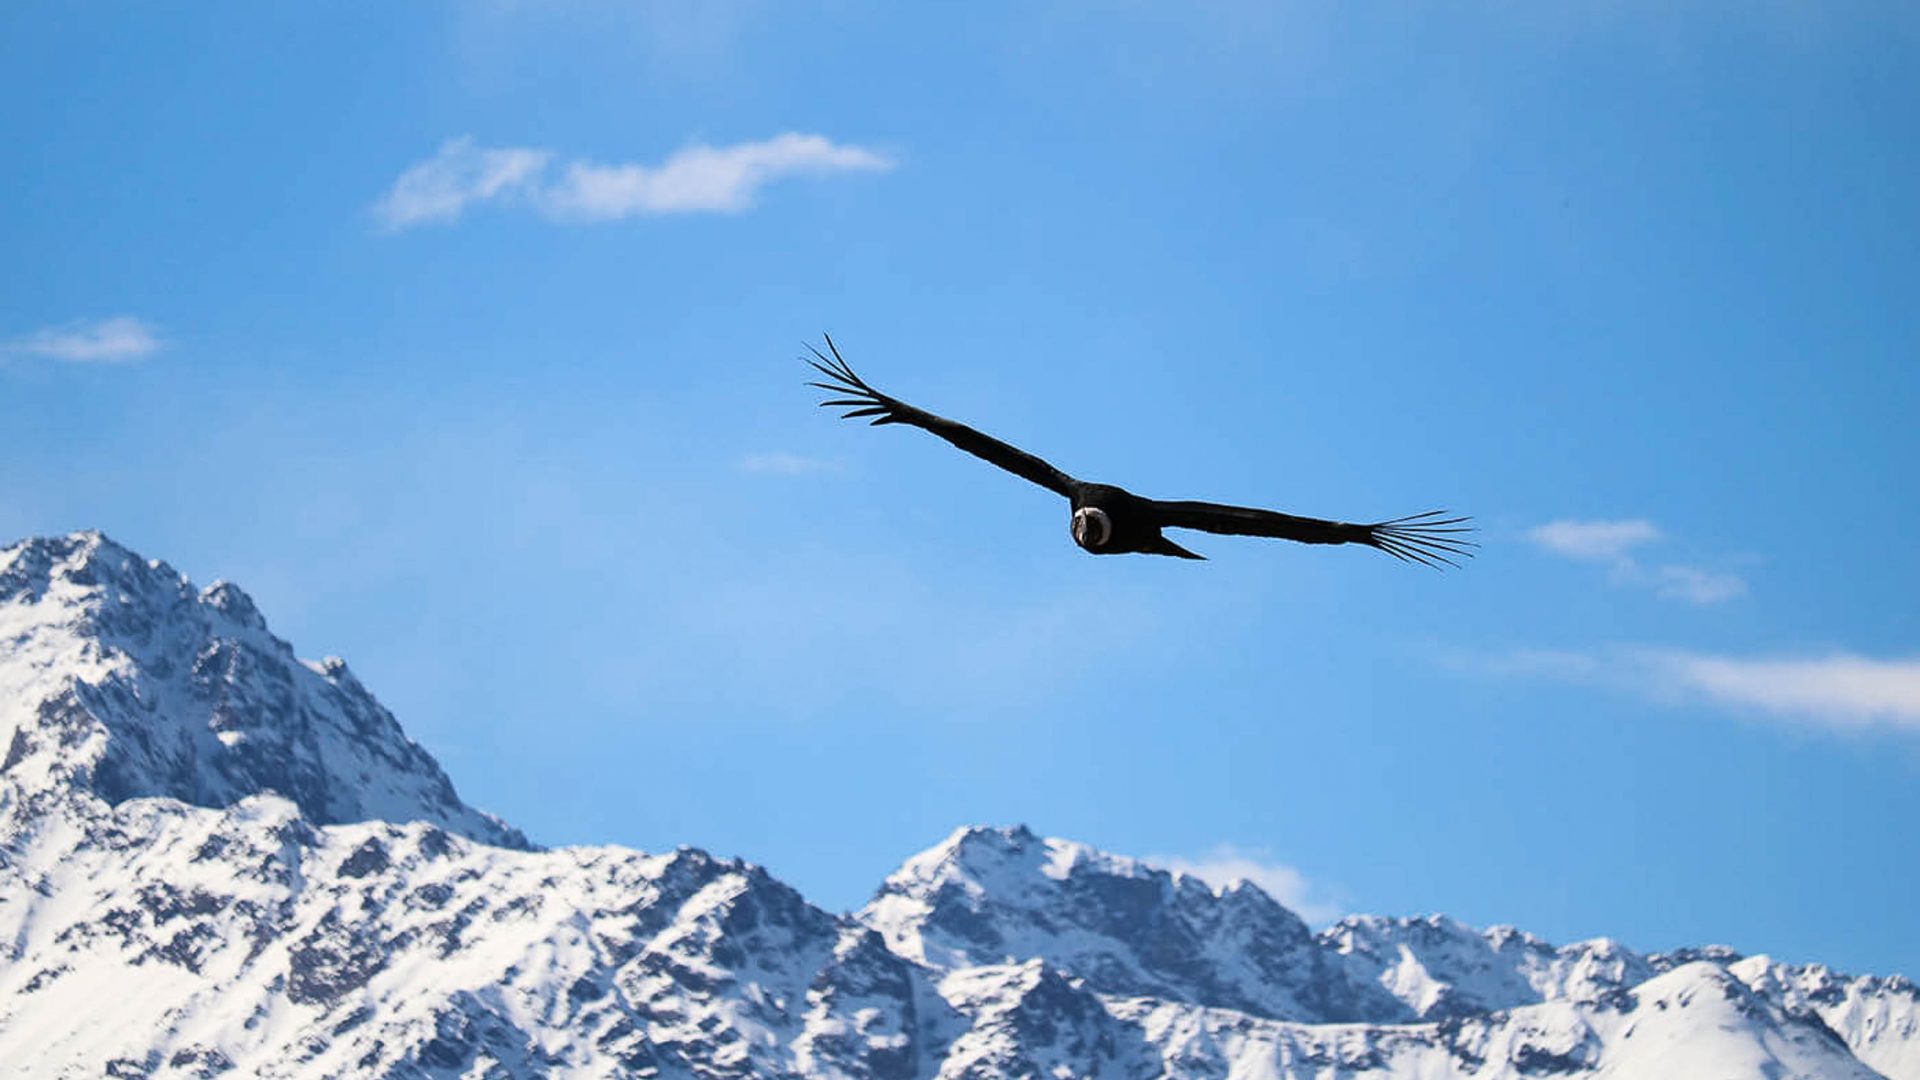 A condor flies over mountains.